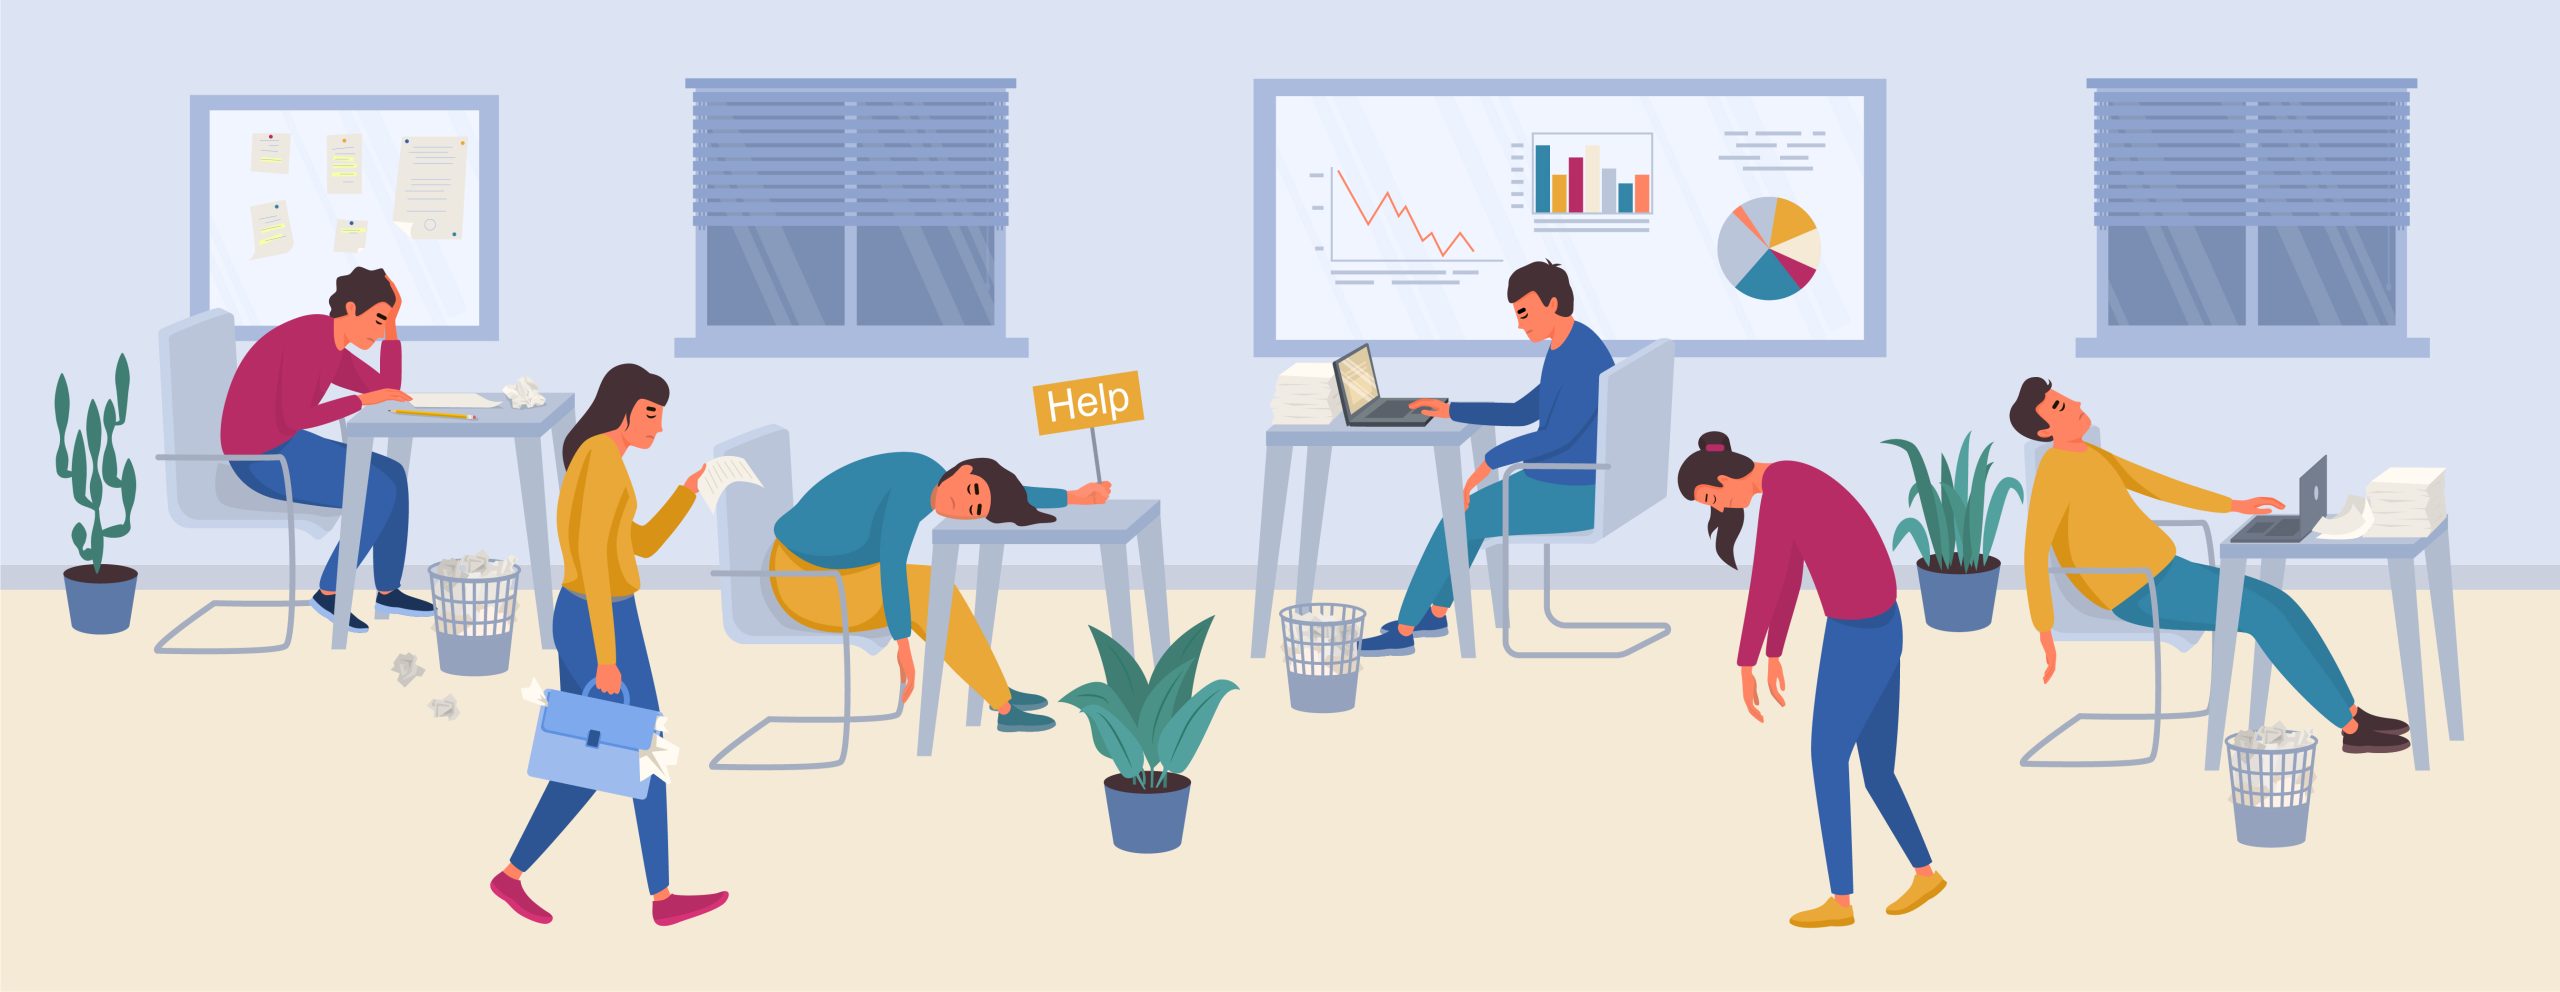 Ilustração mostra uma sala de escritório com seis pessoas trabalhando e aparentemente exaustas, uma delas segura uma placa que diz "Help".